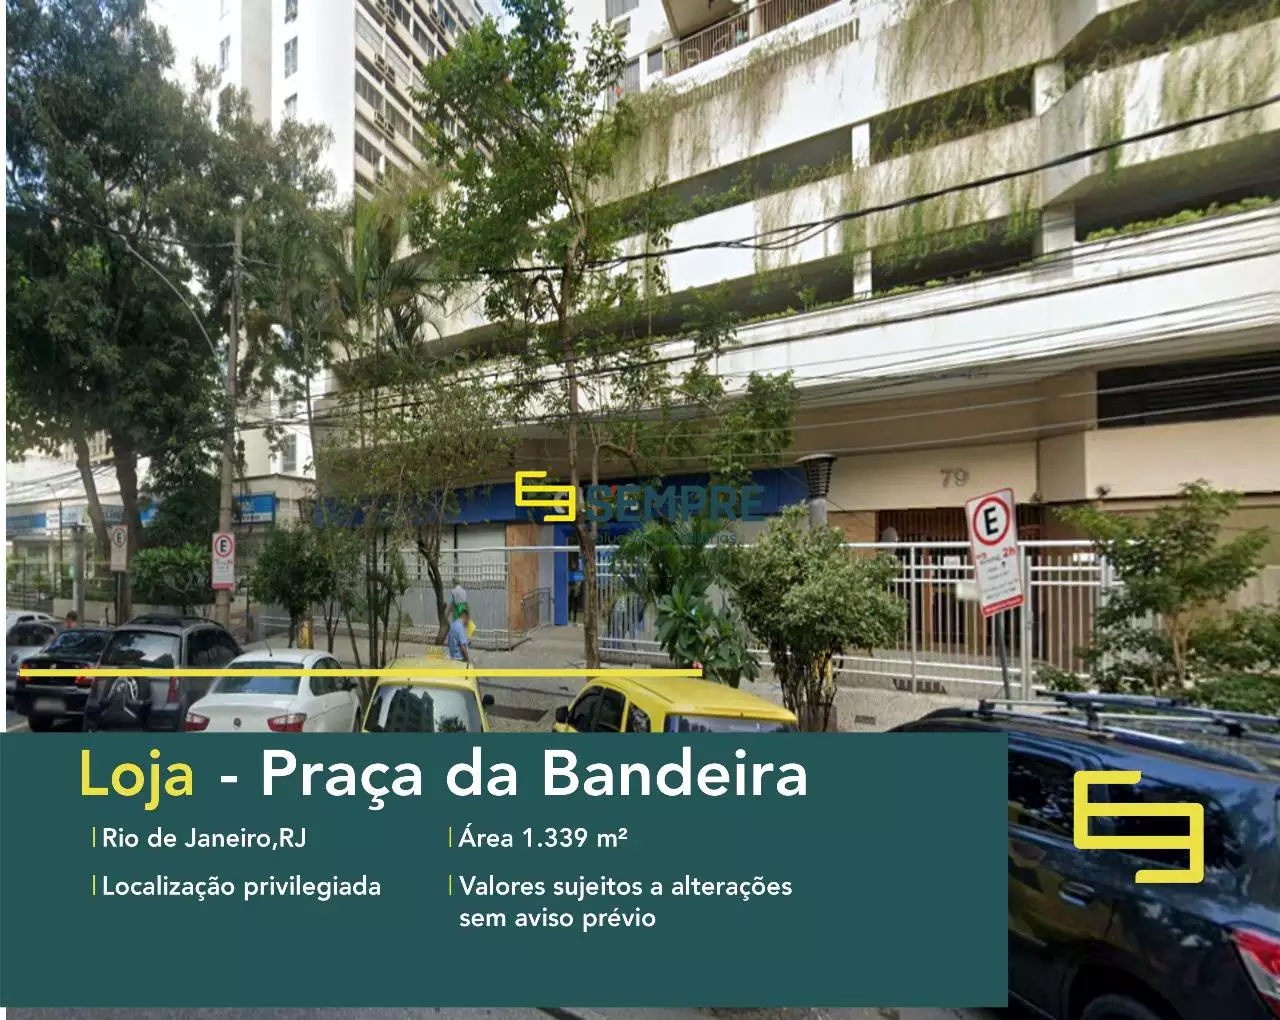 Loja na Praça da Bandeira para alugar no Rio de Janeiro, em excelente localização. O estabelecimento comercial conta com área de 1.339 m².